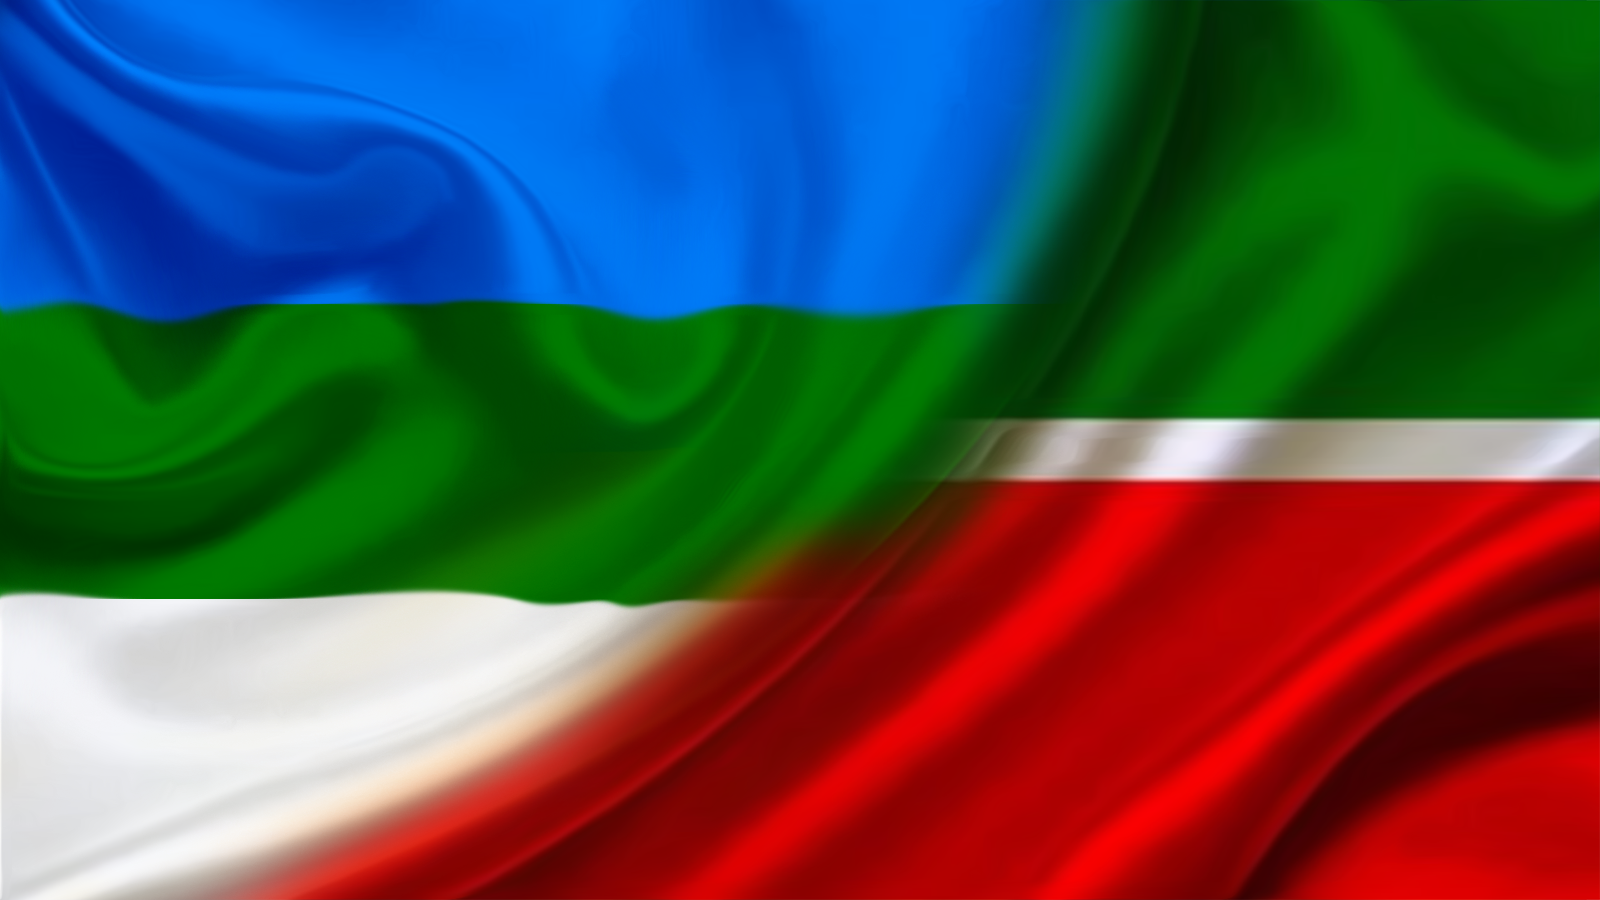 14 квітня Уряд незалежного Татарстану та Комітет Башкирського національного руху за кордоном підписали спільну Декларацію про взаємне визнання та співпрацю